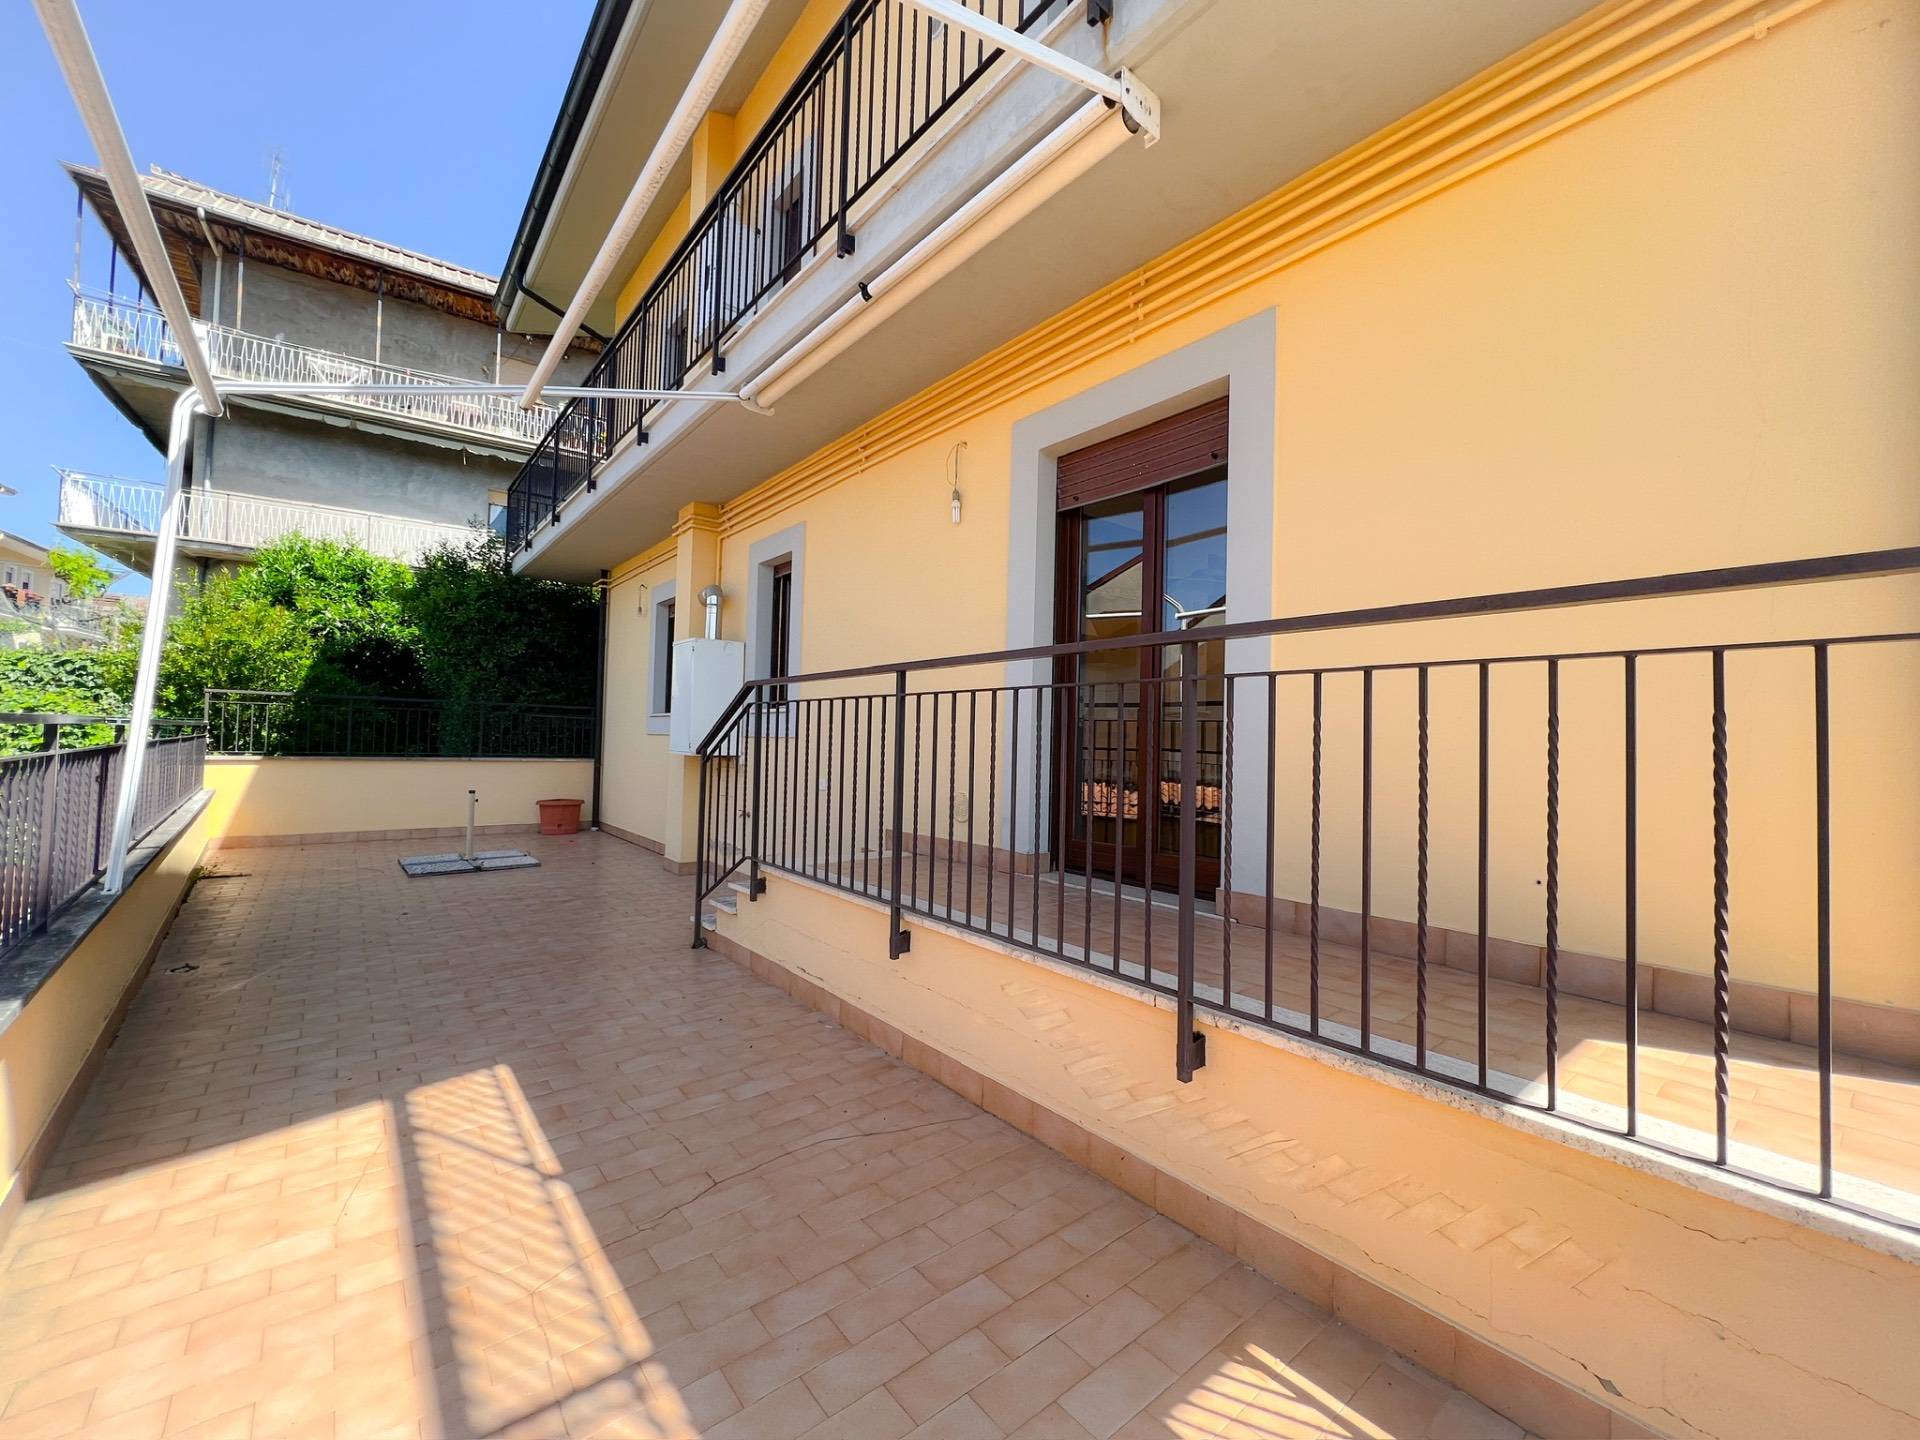 Appartamento in vendita a Fiuggi, 2 locali, prezzo € 65.000 | PortaleAgenzieImmobiliari.it